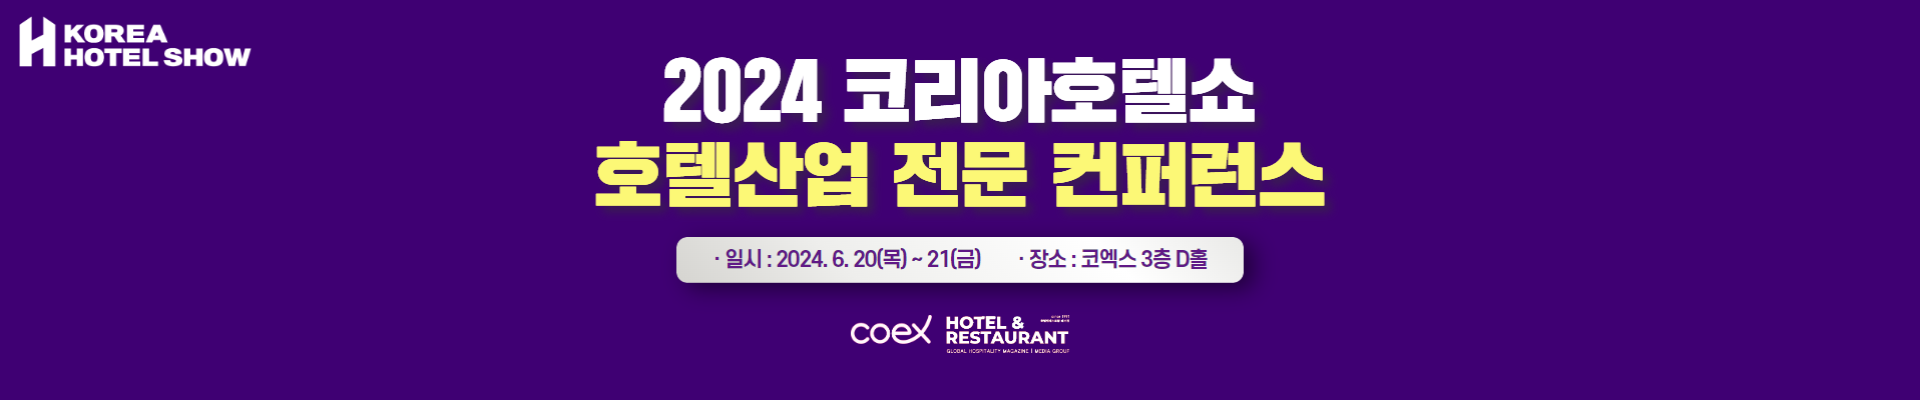 2024 호텔산업 전문 컨퍼런스